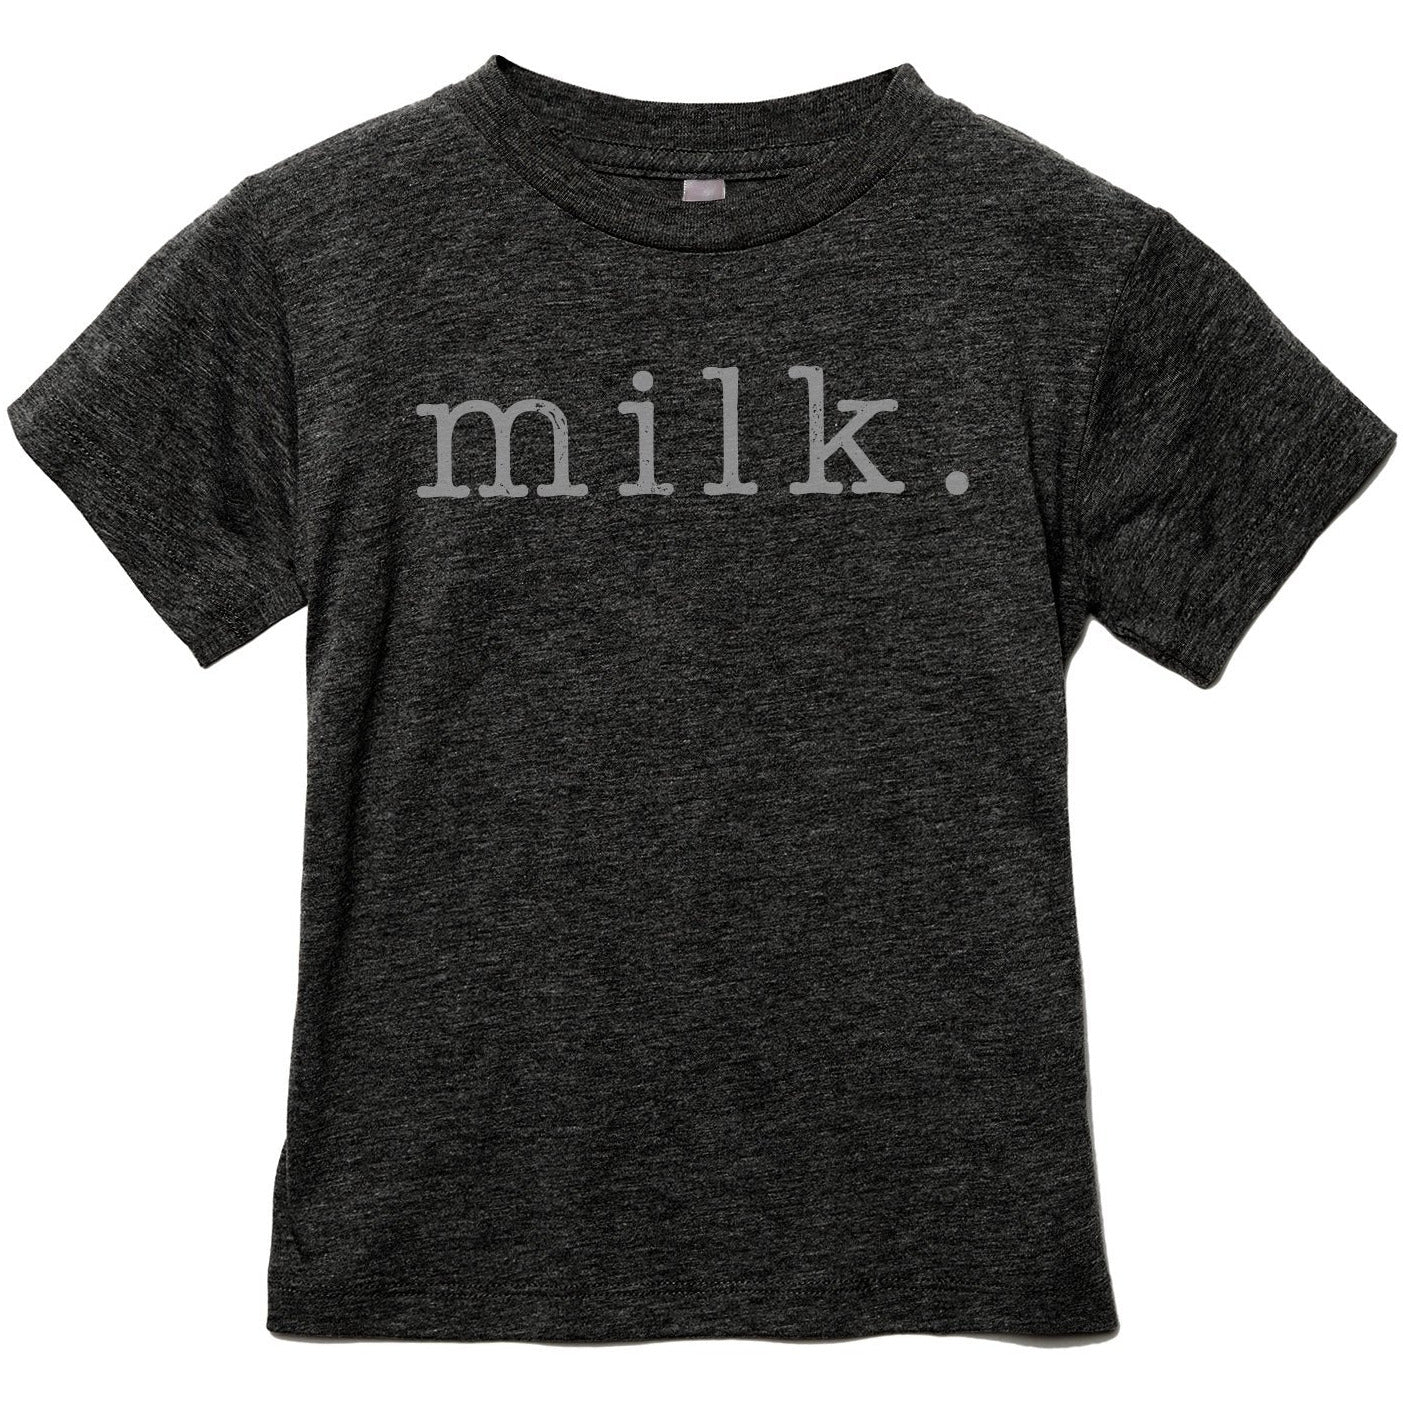 Milk Text